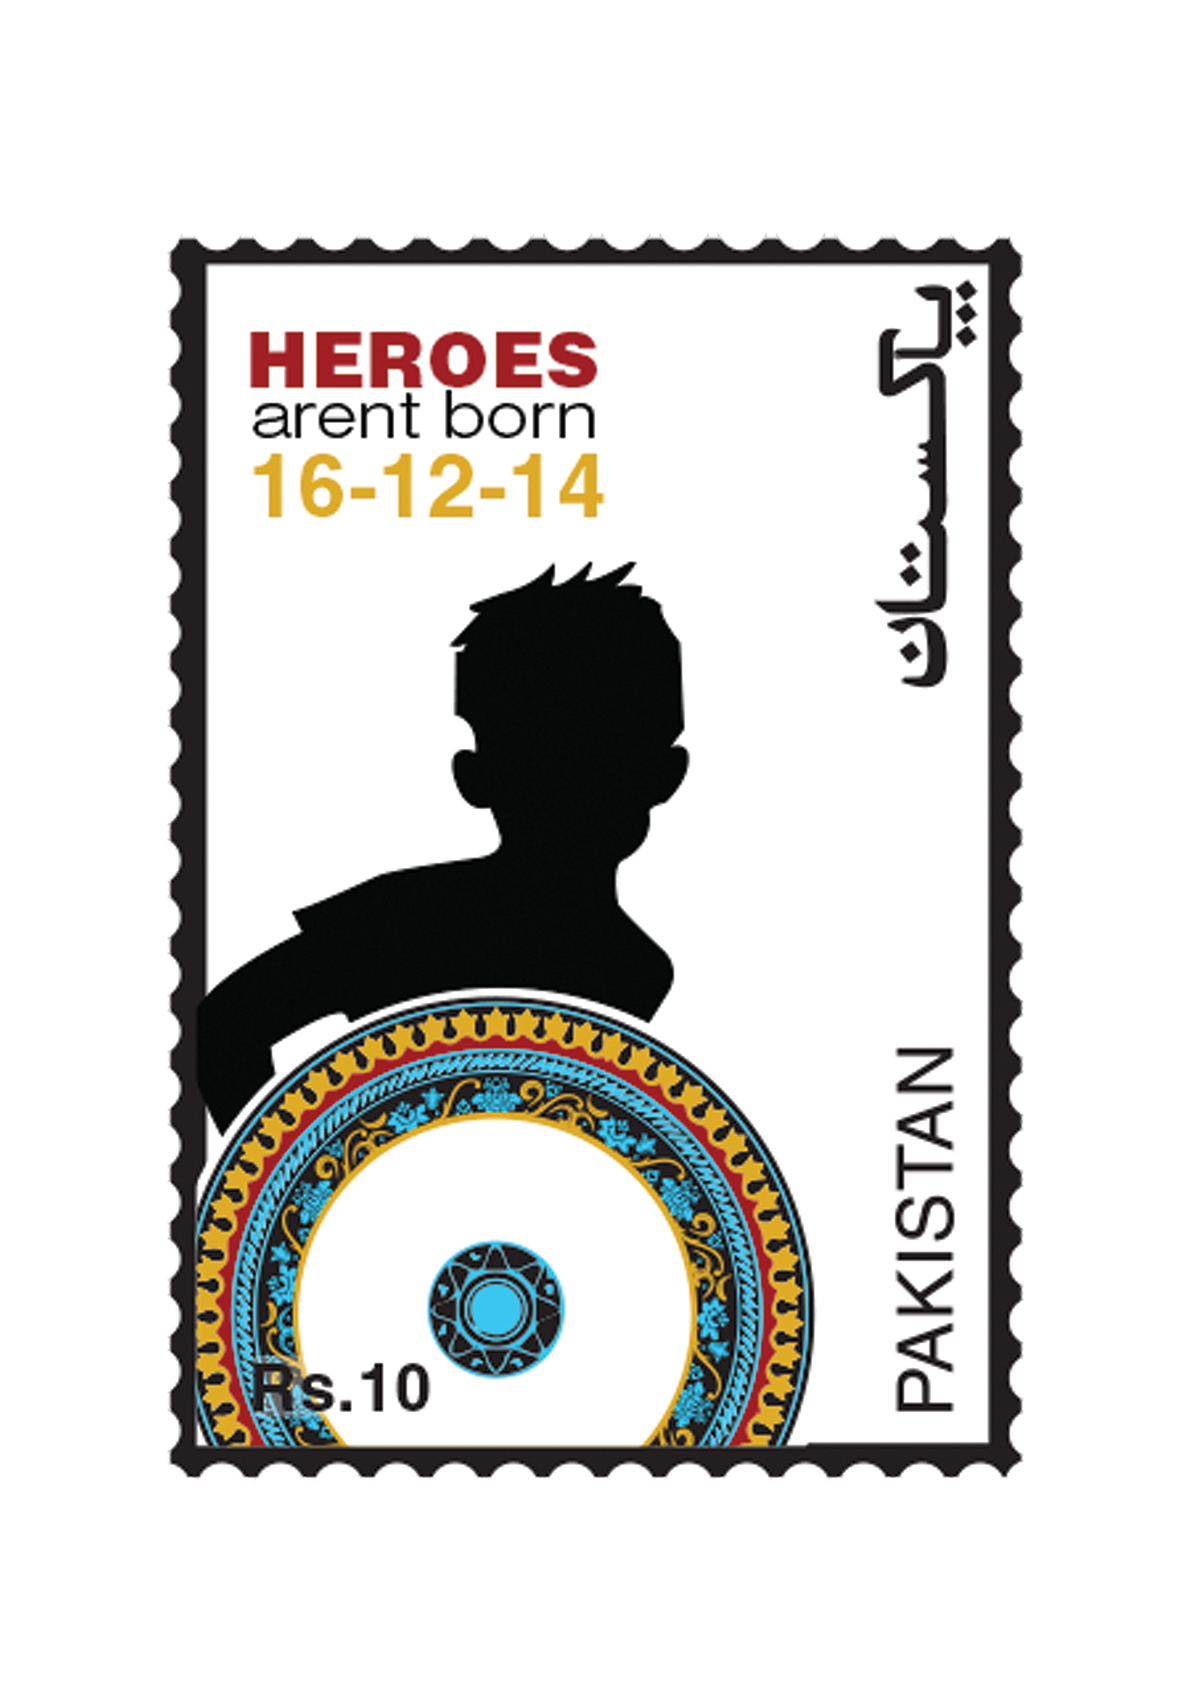 Terrorism stamp Postage silouhette motif War